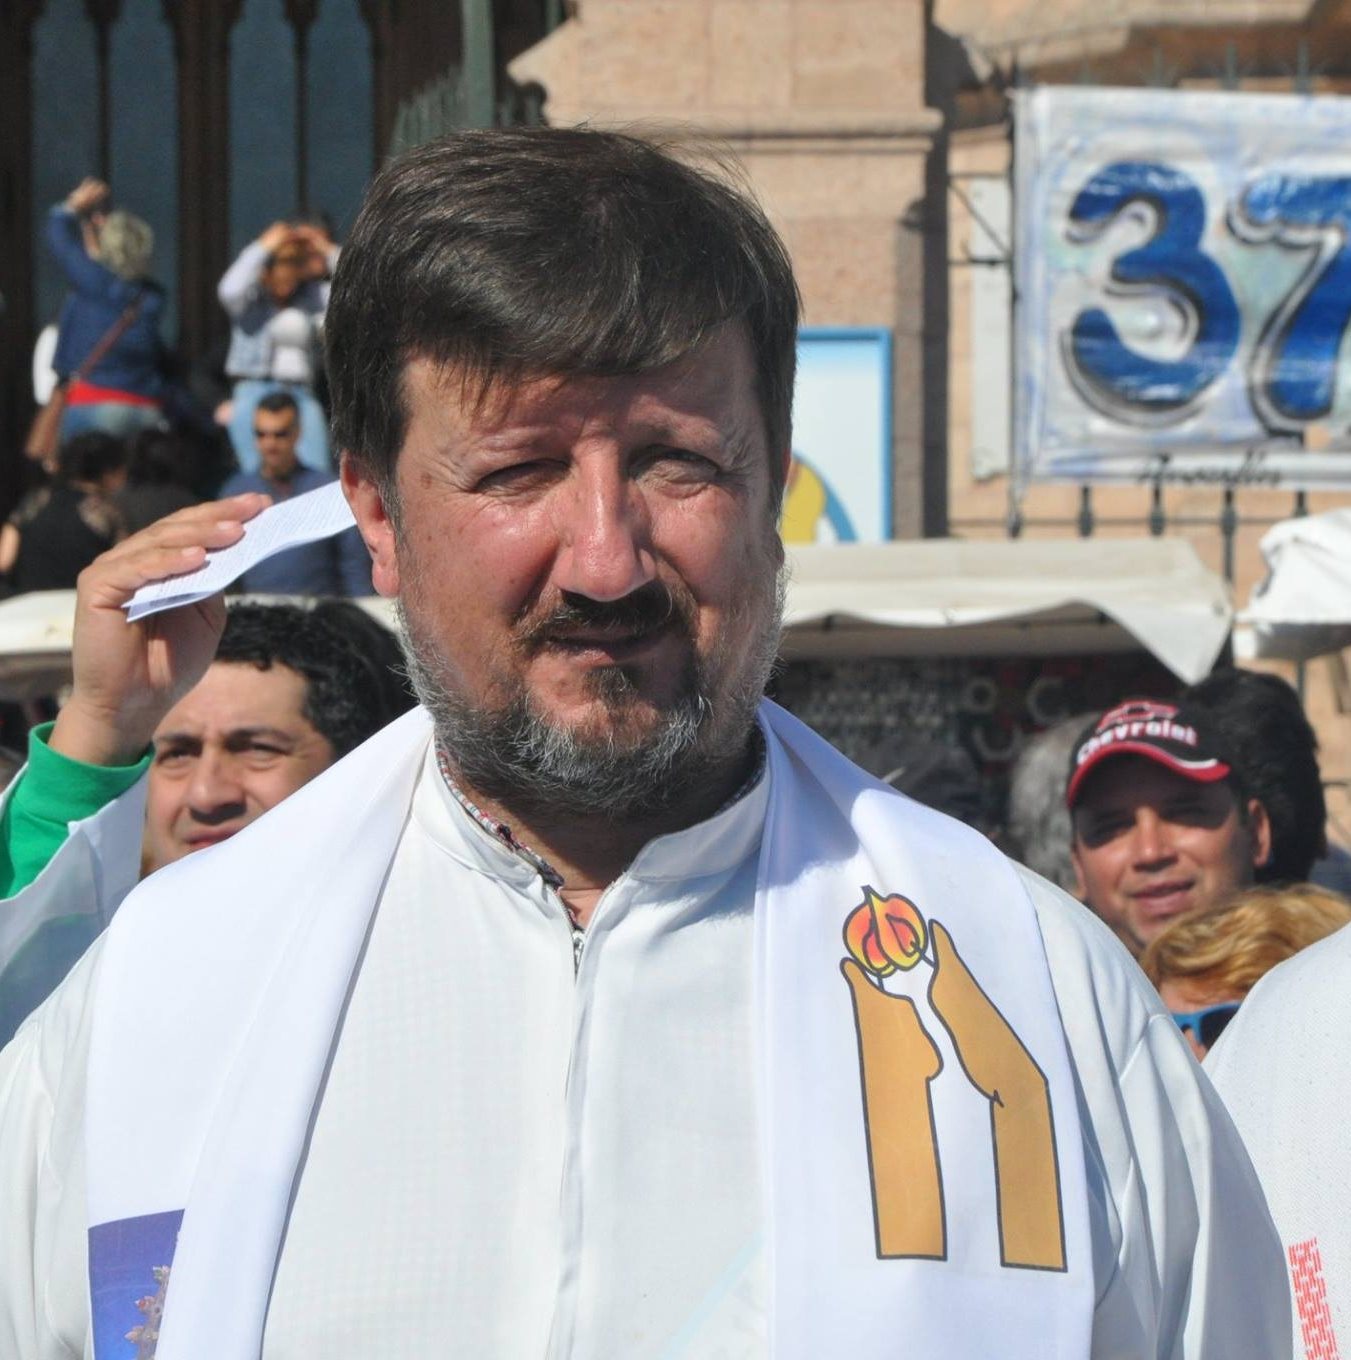 El Legado De La Fe Y El Compromiso Social: Entrevista Con El Padre Lucio Carvallo Rodríguez